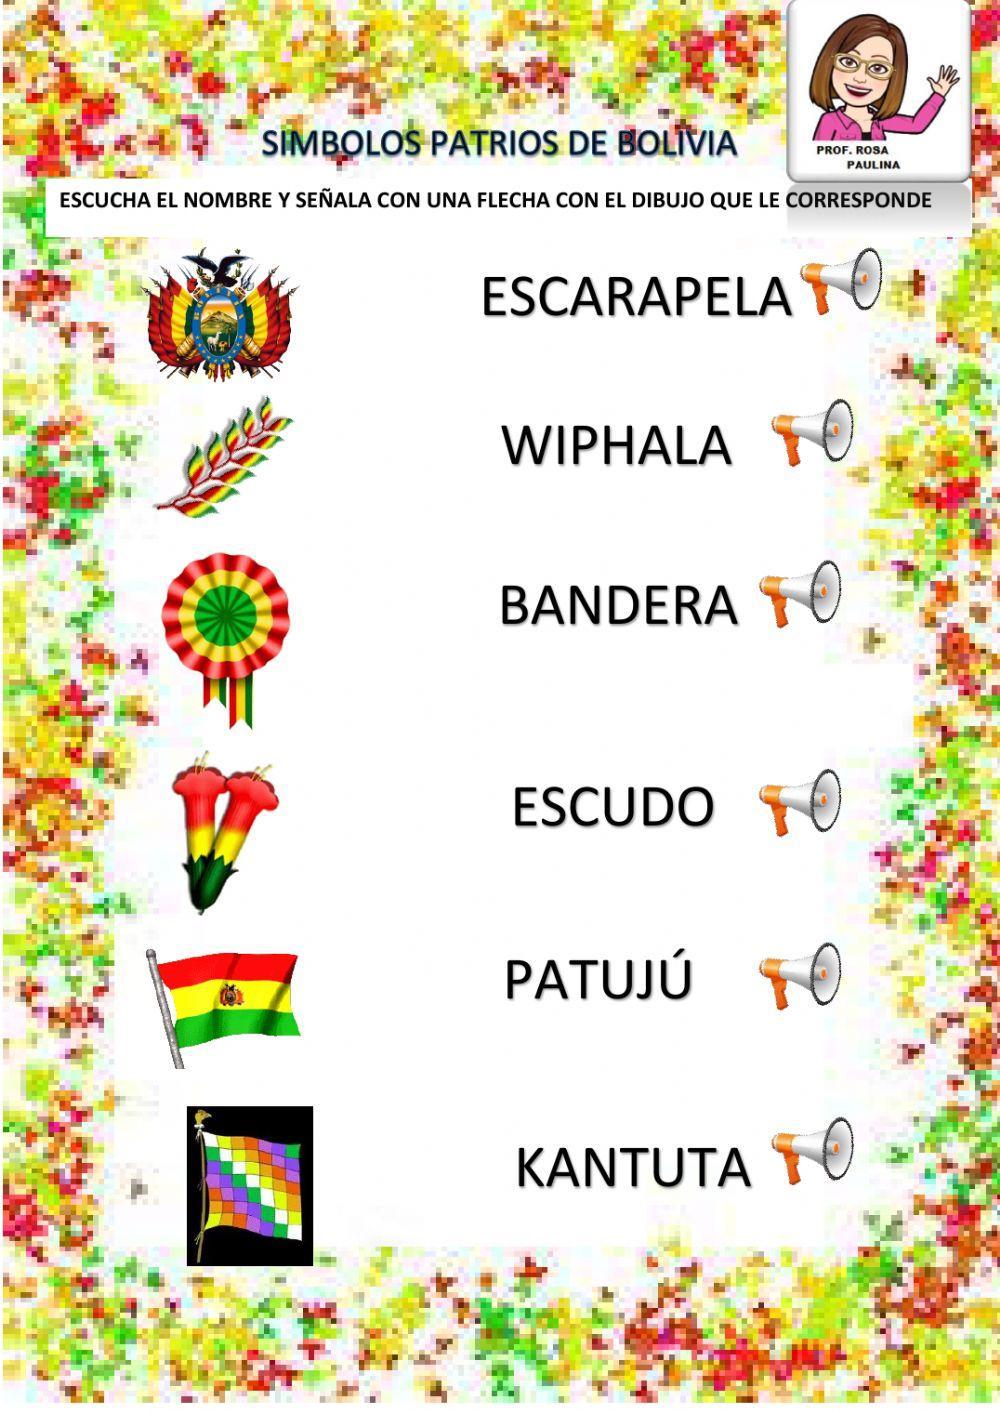 Simbolos patrios de bolivia